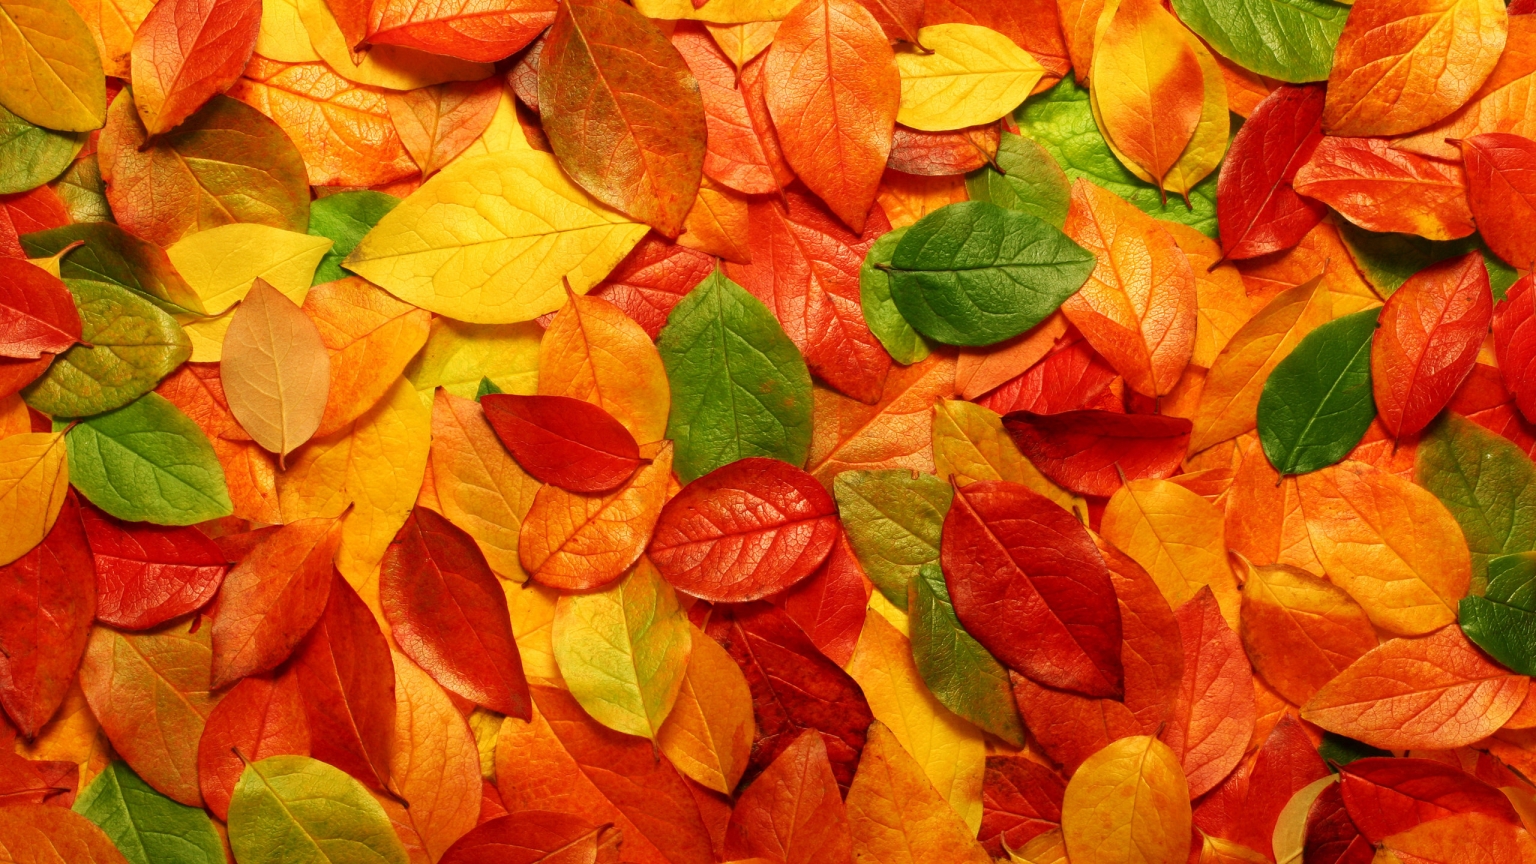 Autumn carpet of leaves for 1536 x 864 HDTV resolution